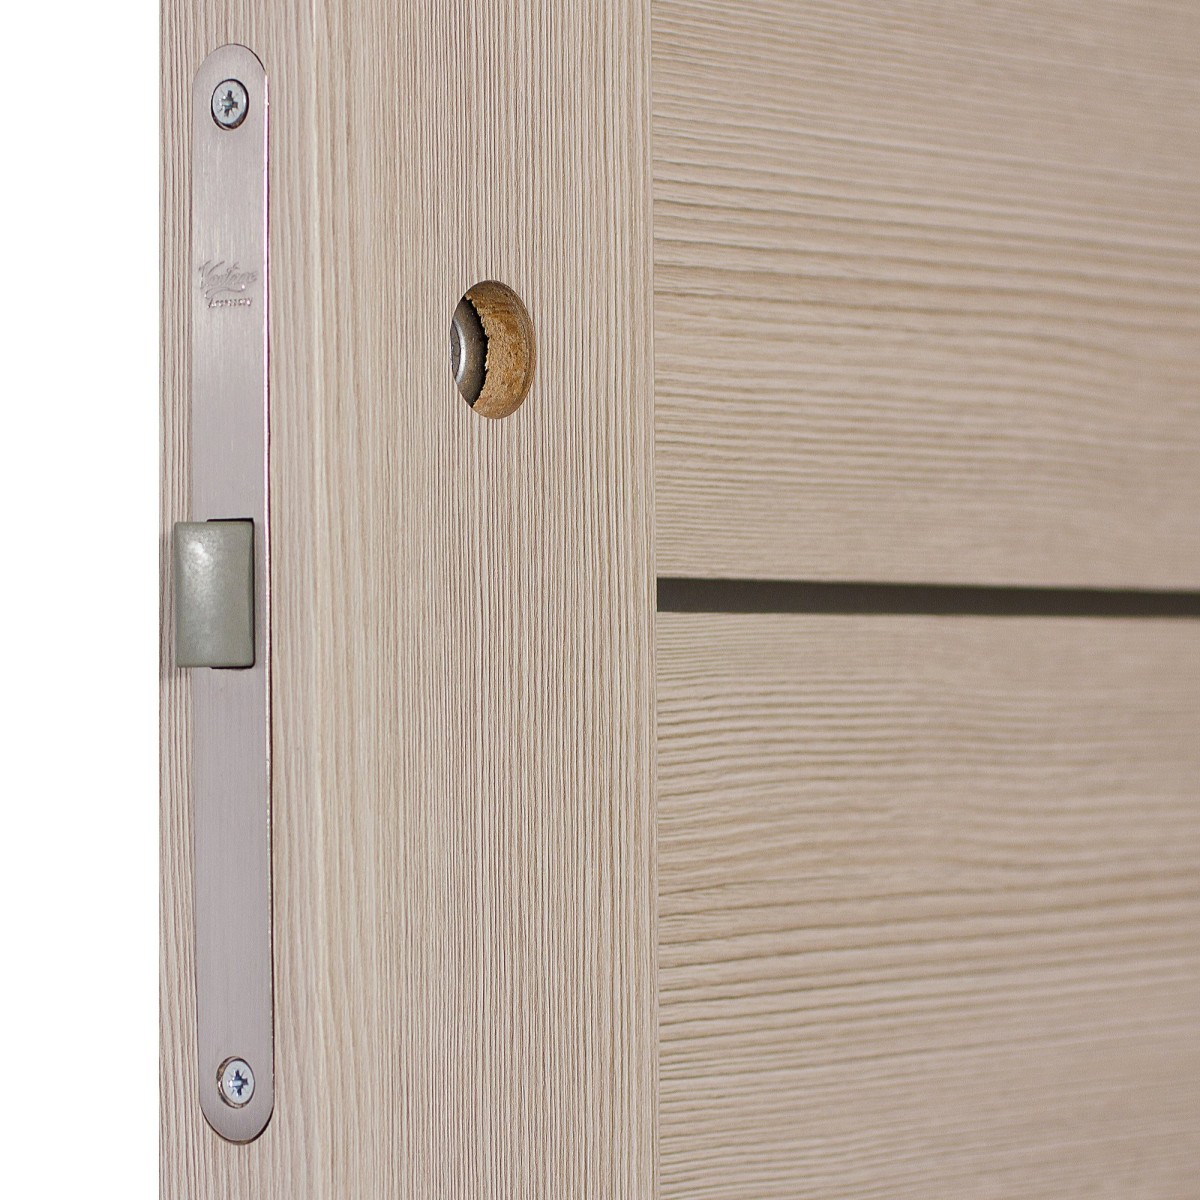 Дверь межкомнатная глухая Ницца 70x200 см, ПВХ, цвет кремовый, с фурнитурой